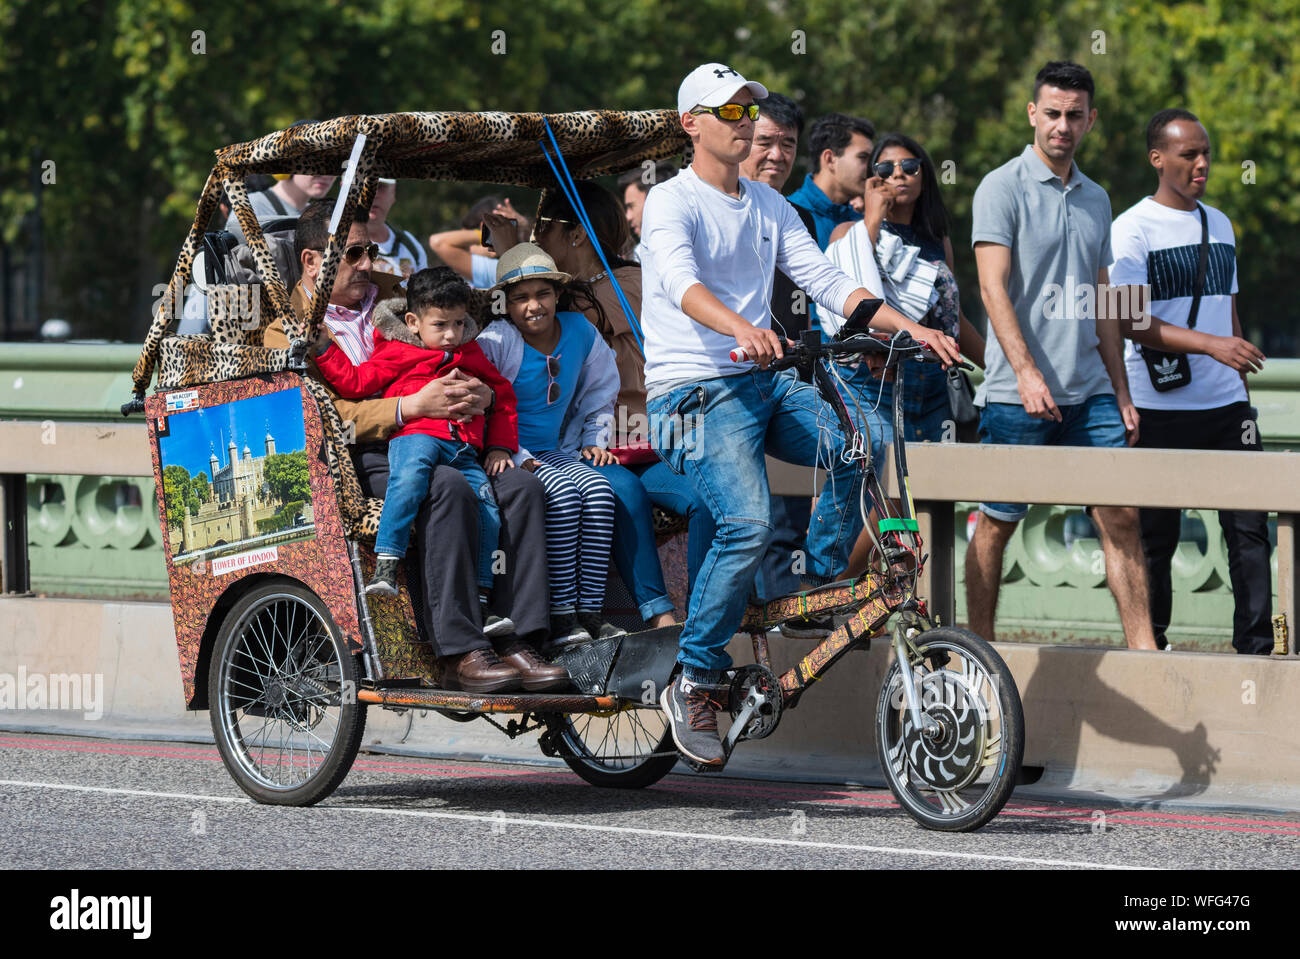 Les touristes comme les passagers sur un trajet touristique dans un pousse-pousse 3 roues ou Pedicab à travers le pont de Westminster à Londres, Angleterre, Royaume-Uni. Banque D'Images